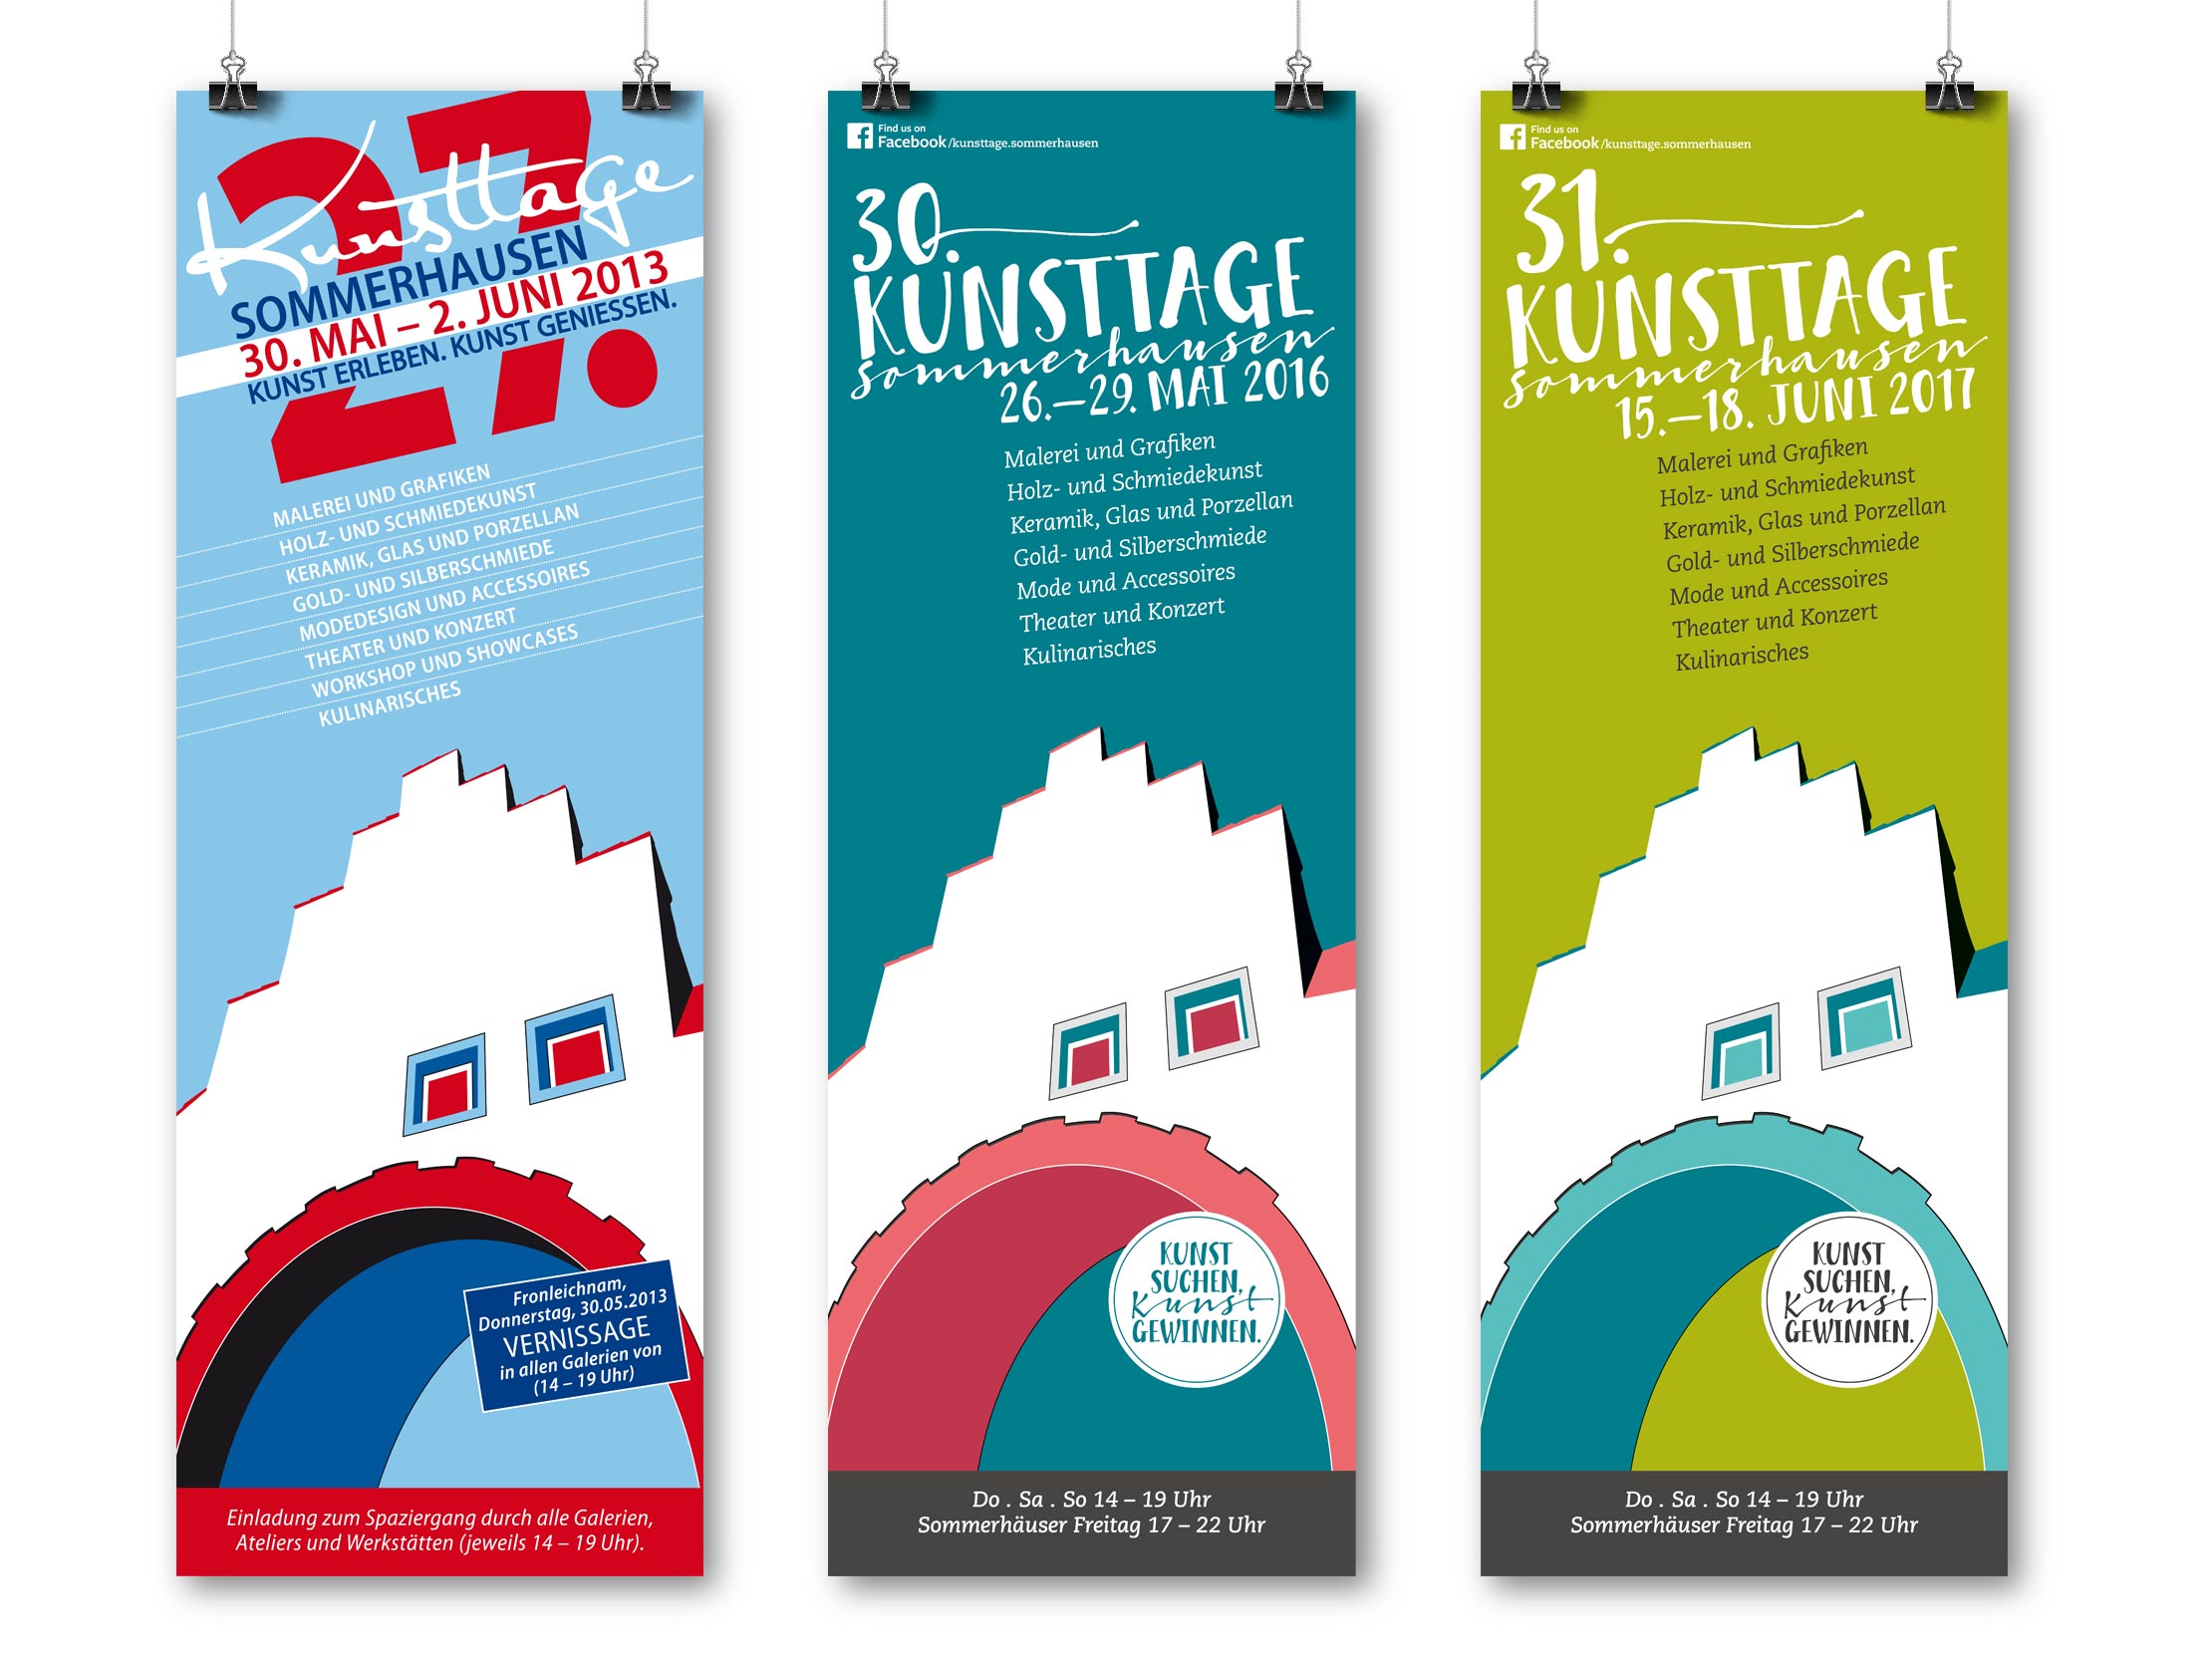 Plakatdesign für die Kunsttage in Sommerhausen